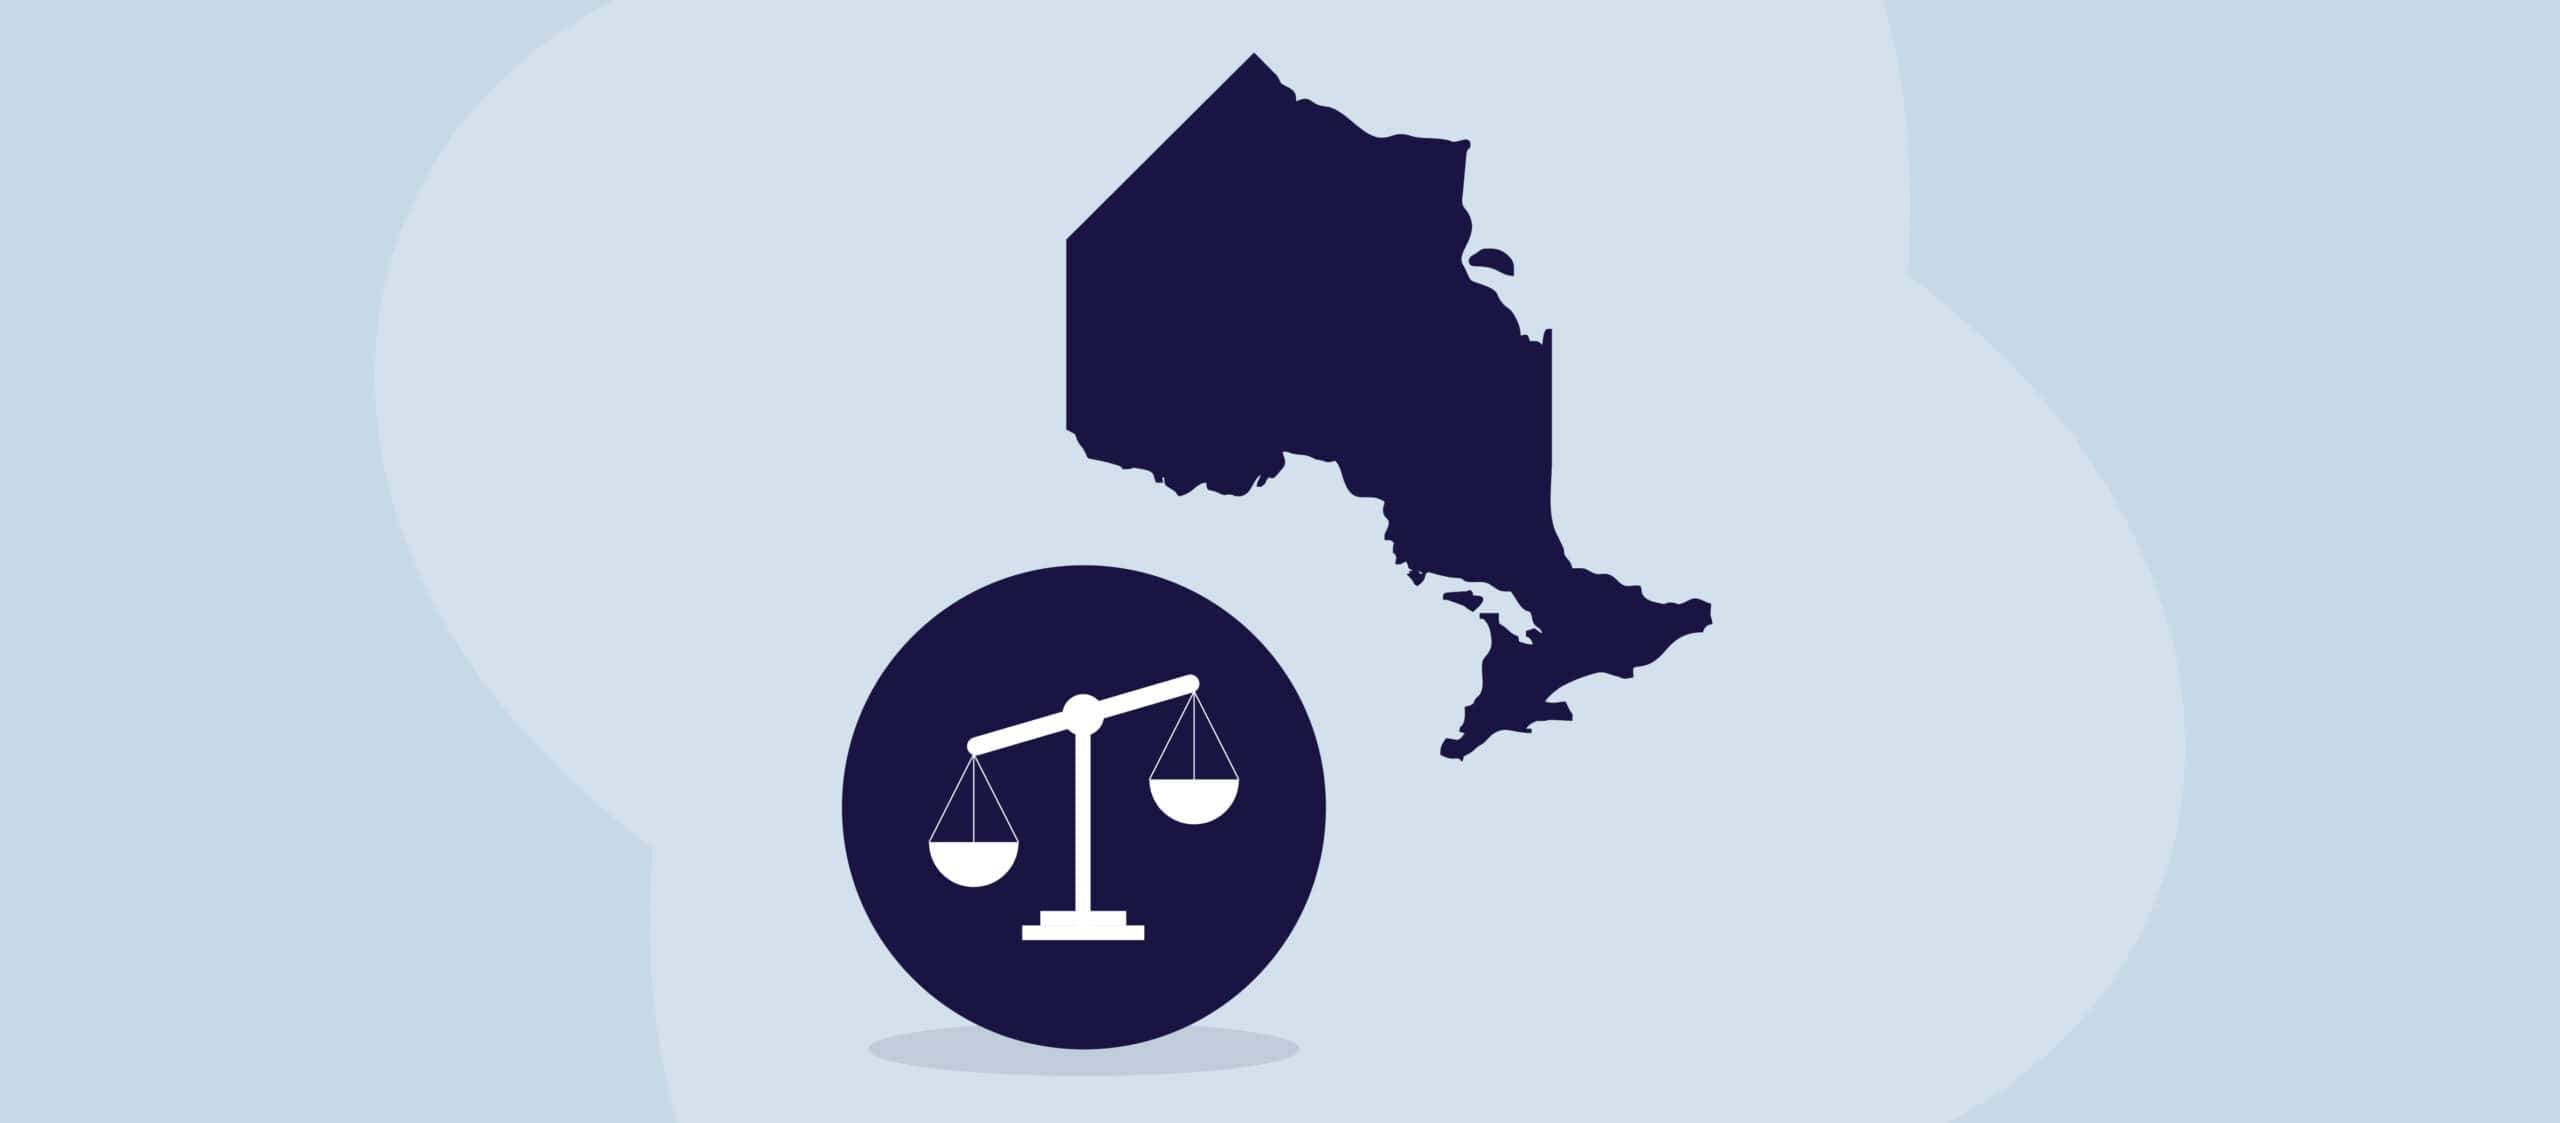 En illustration af provinsen Ontario ved siden af juridiske vægte.